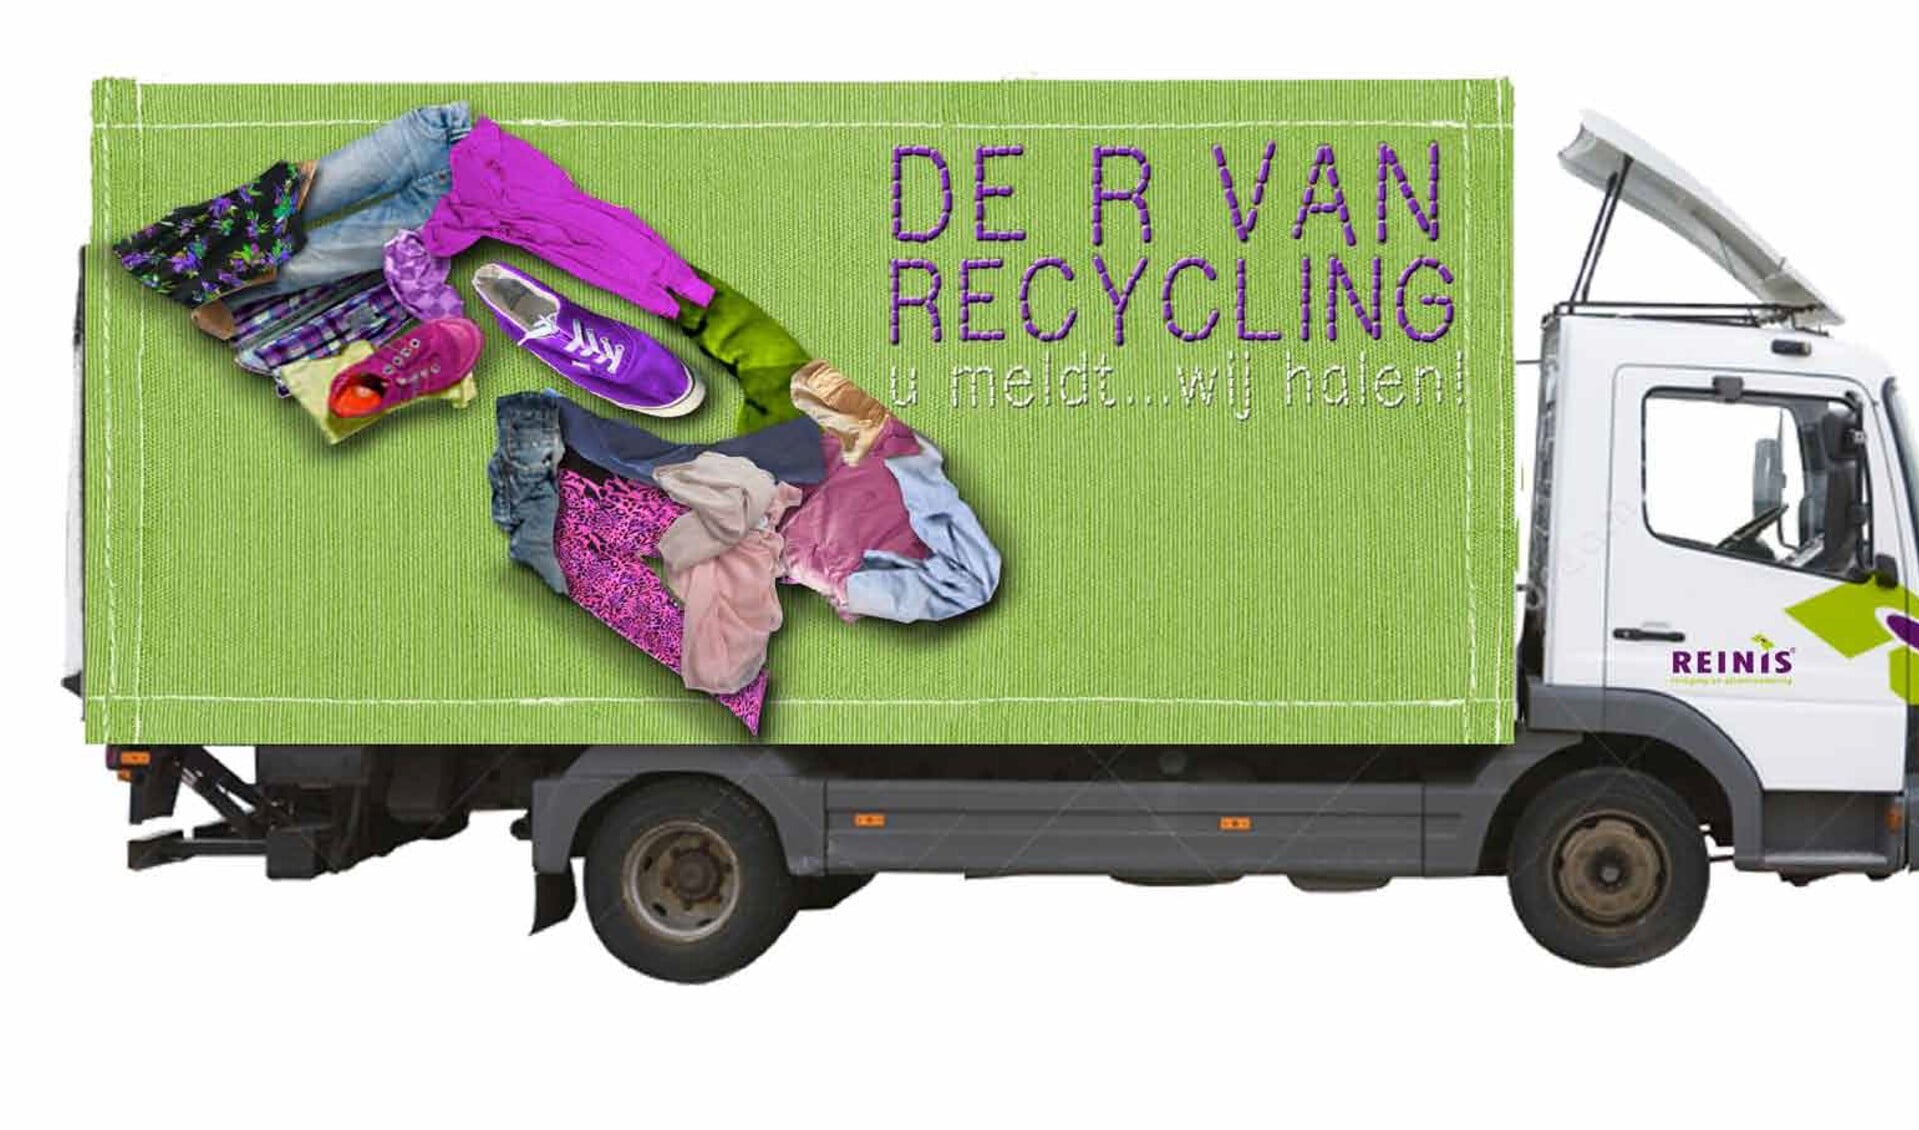 De nieuwe textielwagen staat al klaar om te worden ingezet, compleet met een aansprekende bestickering om recycling te stimuleren.